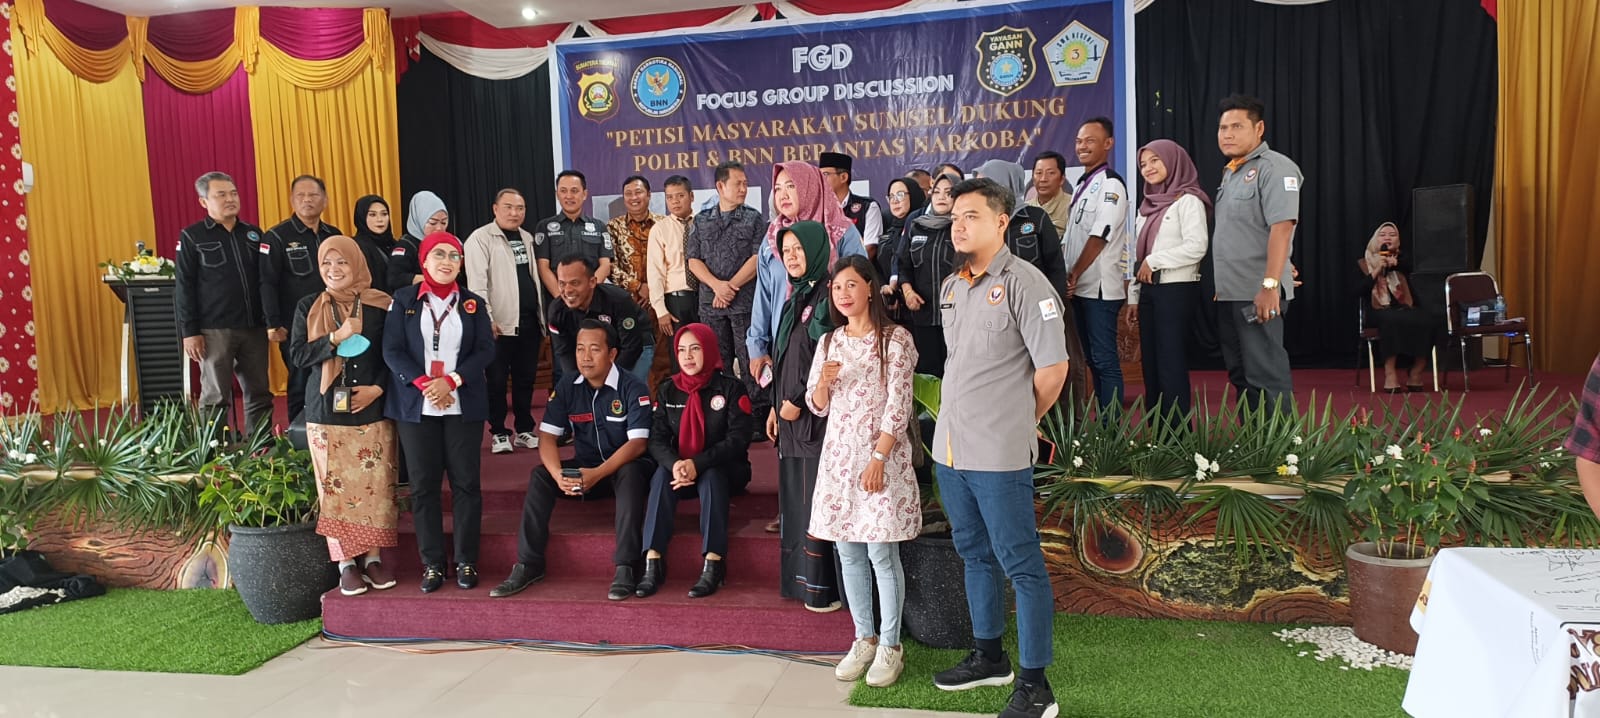 Y- GANN FGD (Focus Group Discussion) "Petisi Masyarakat Sumsel Dakung Polri dan BNN Berantas NARKOBA